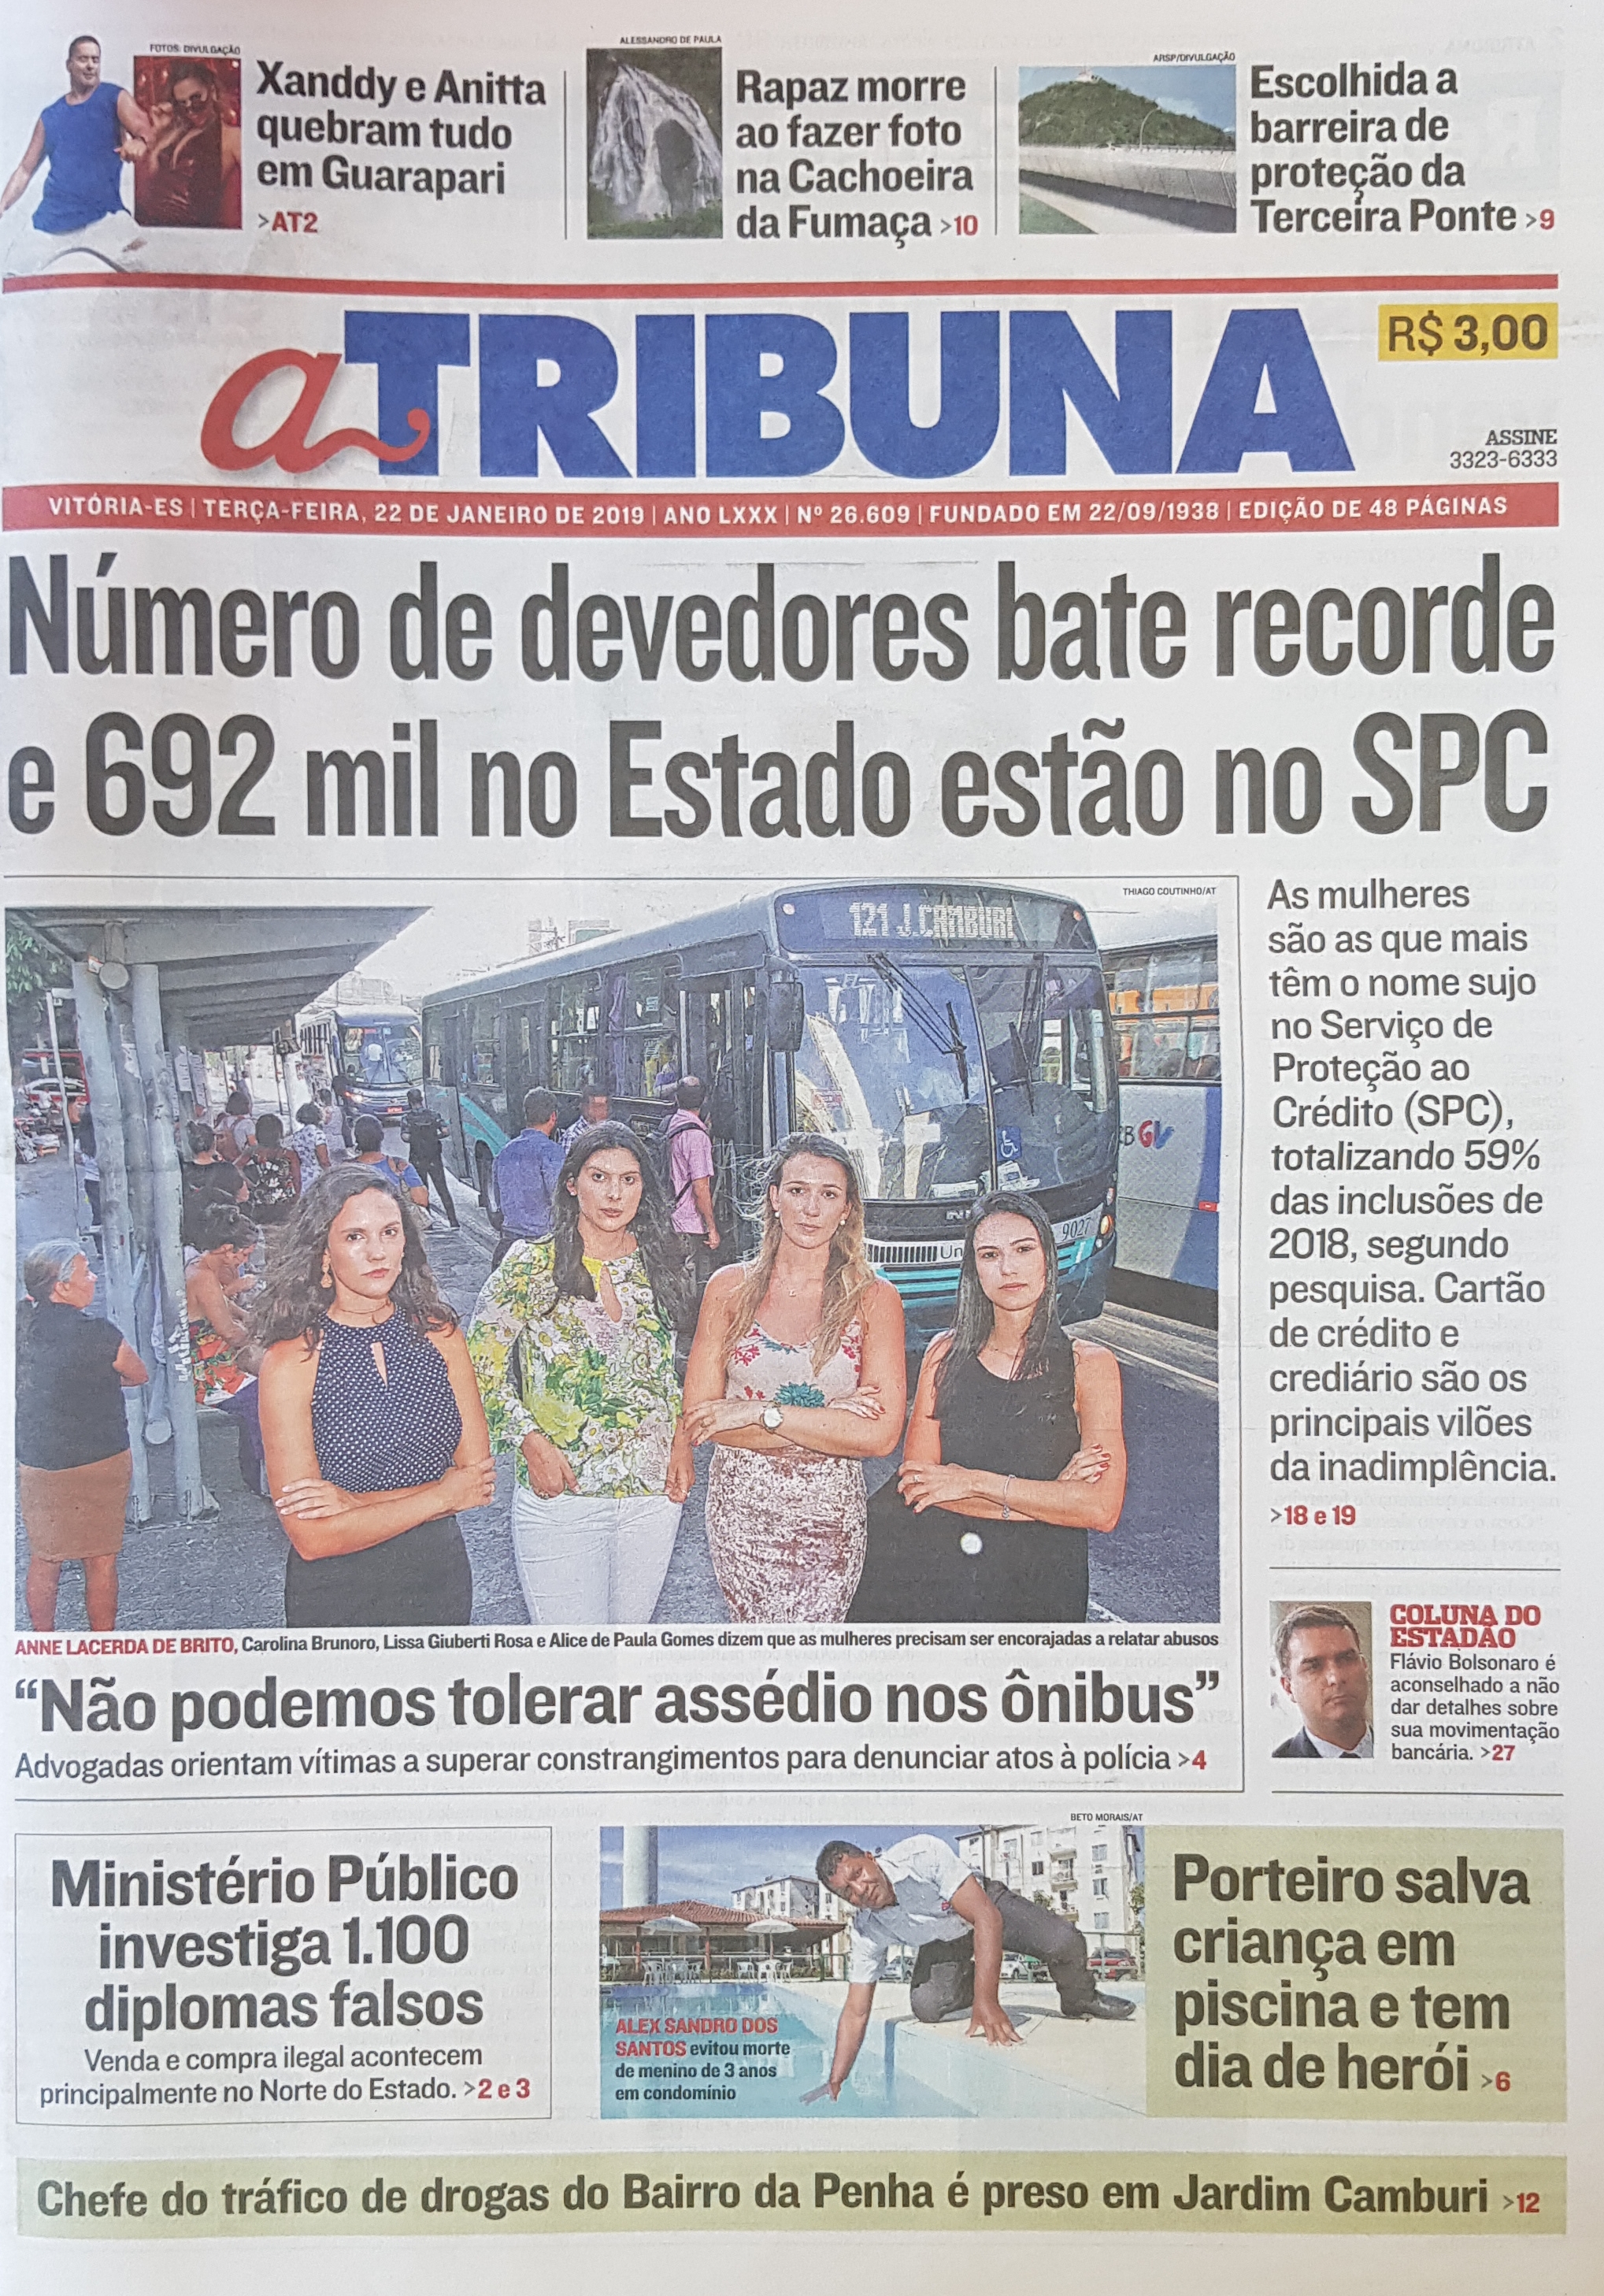 Tribuna Arkade: Jornal brasileiro causa polêmica ao associar RPG